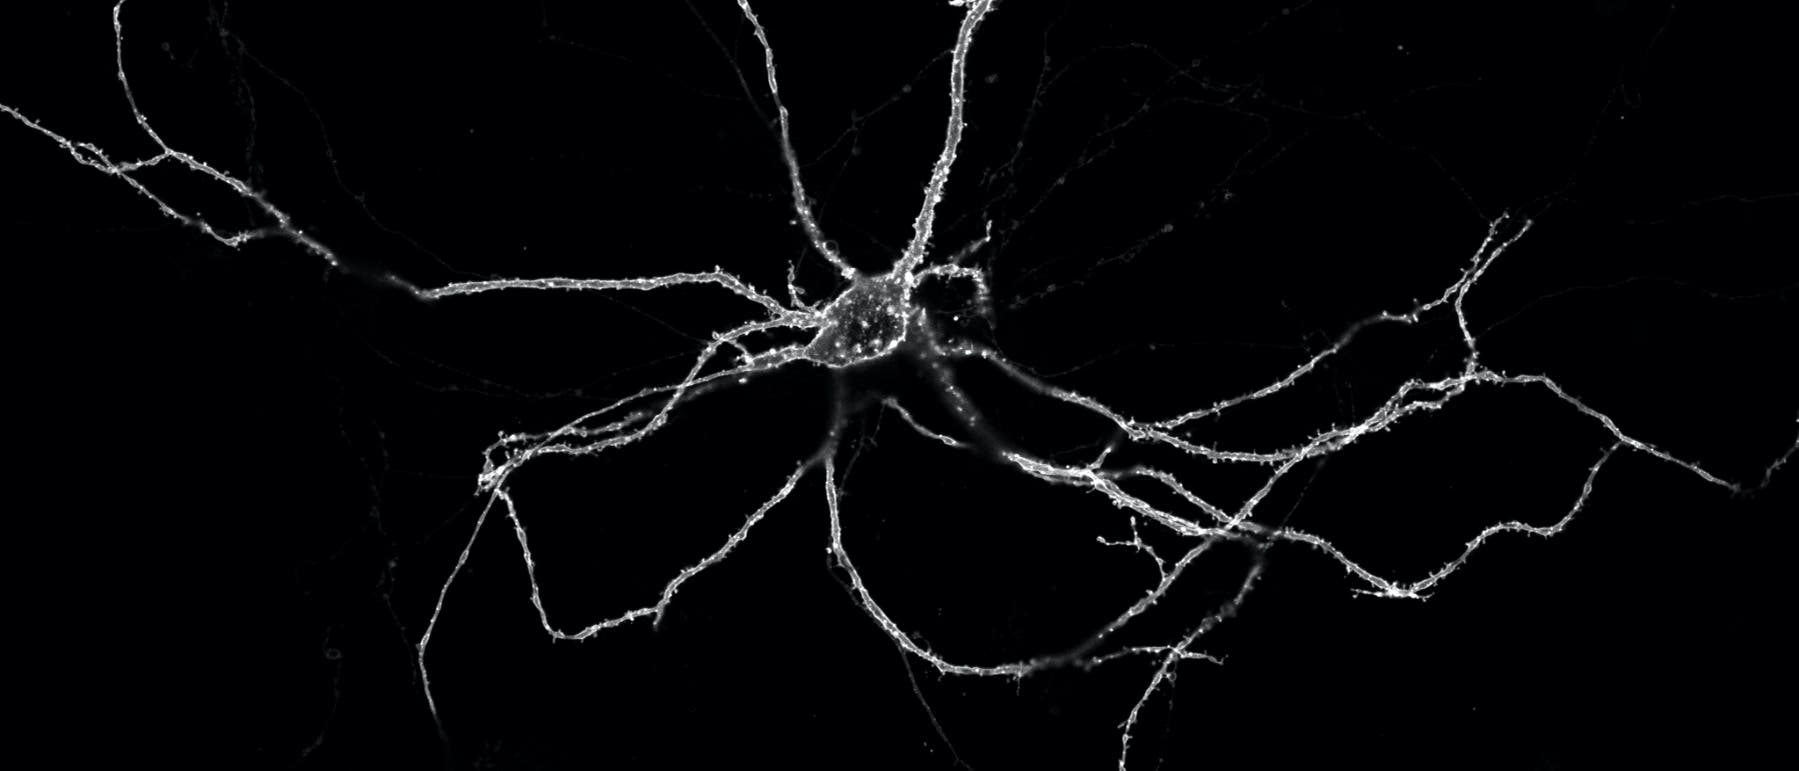 Eine Nervenzelle, an deren Membran fluoreszierende Proteine sitzen